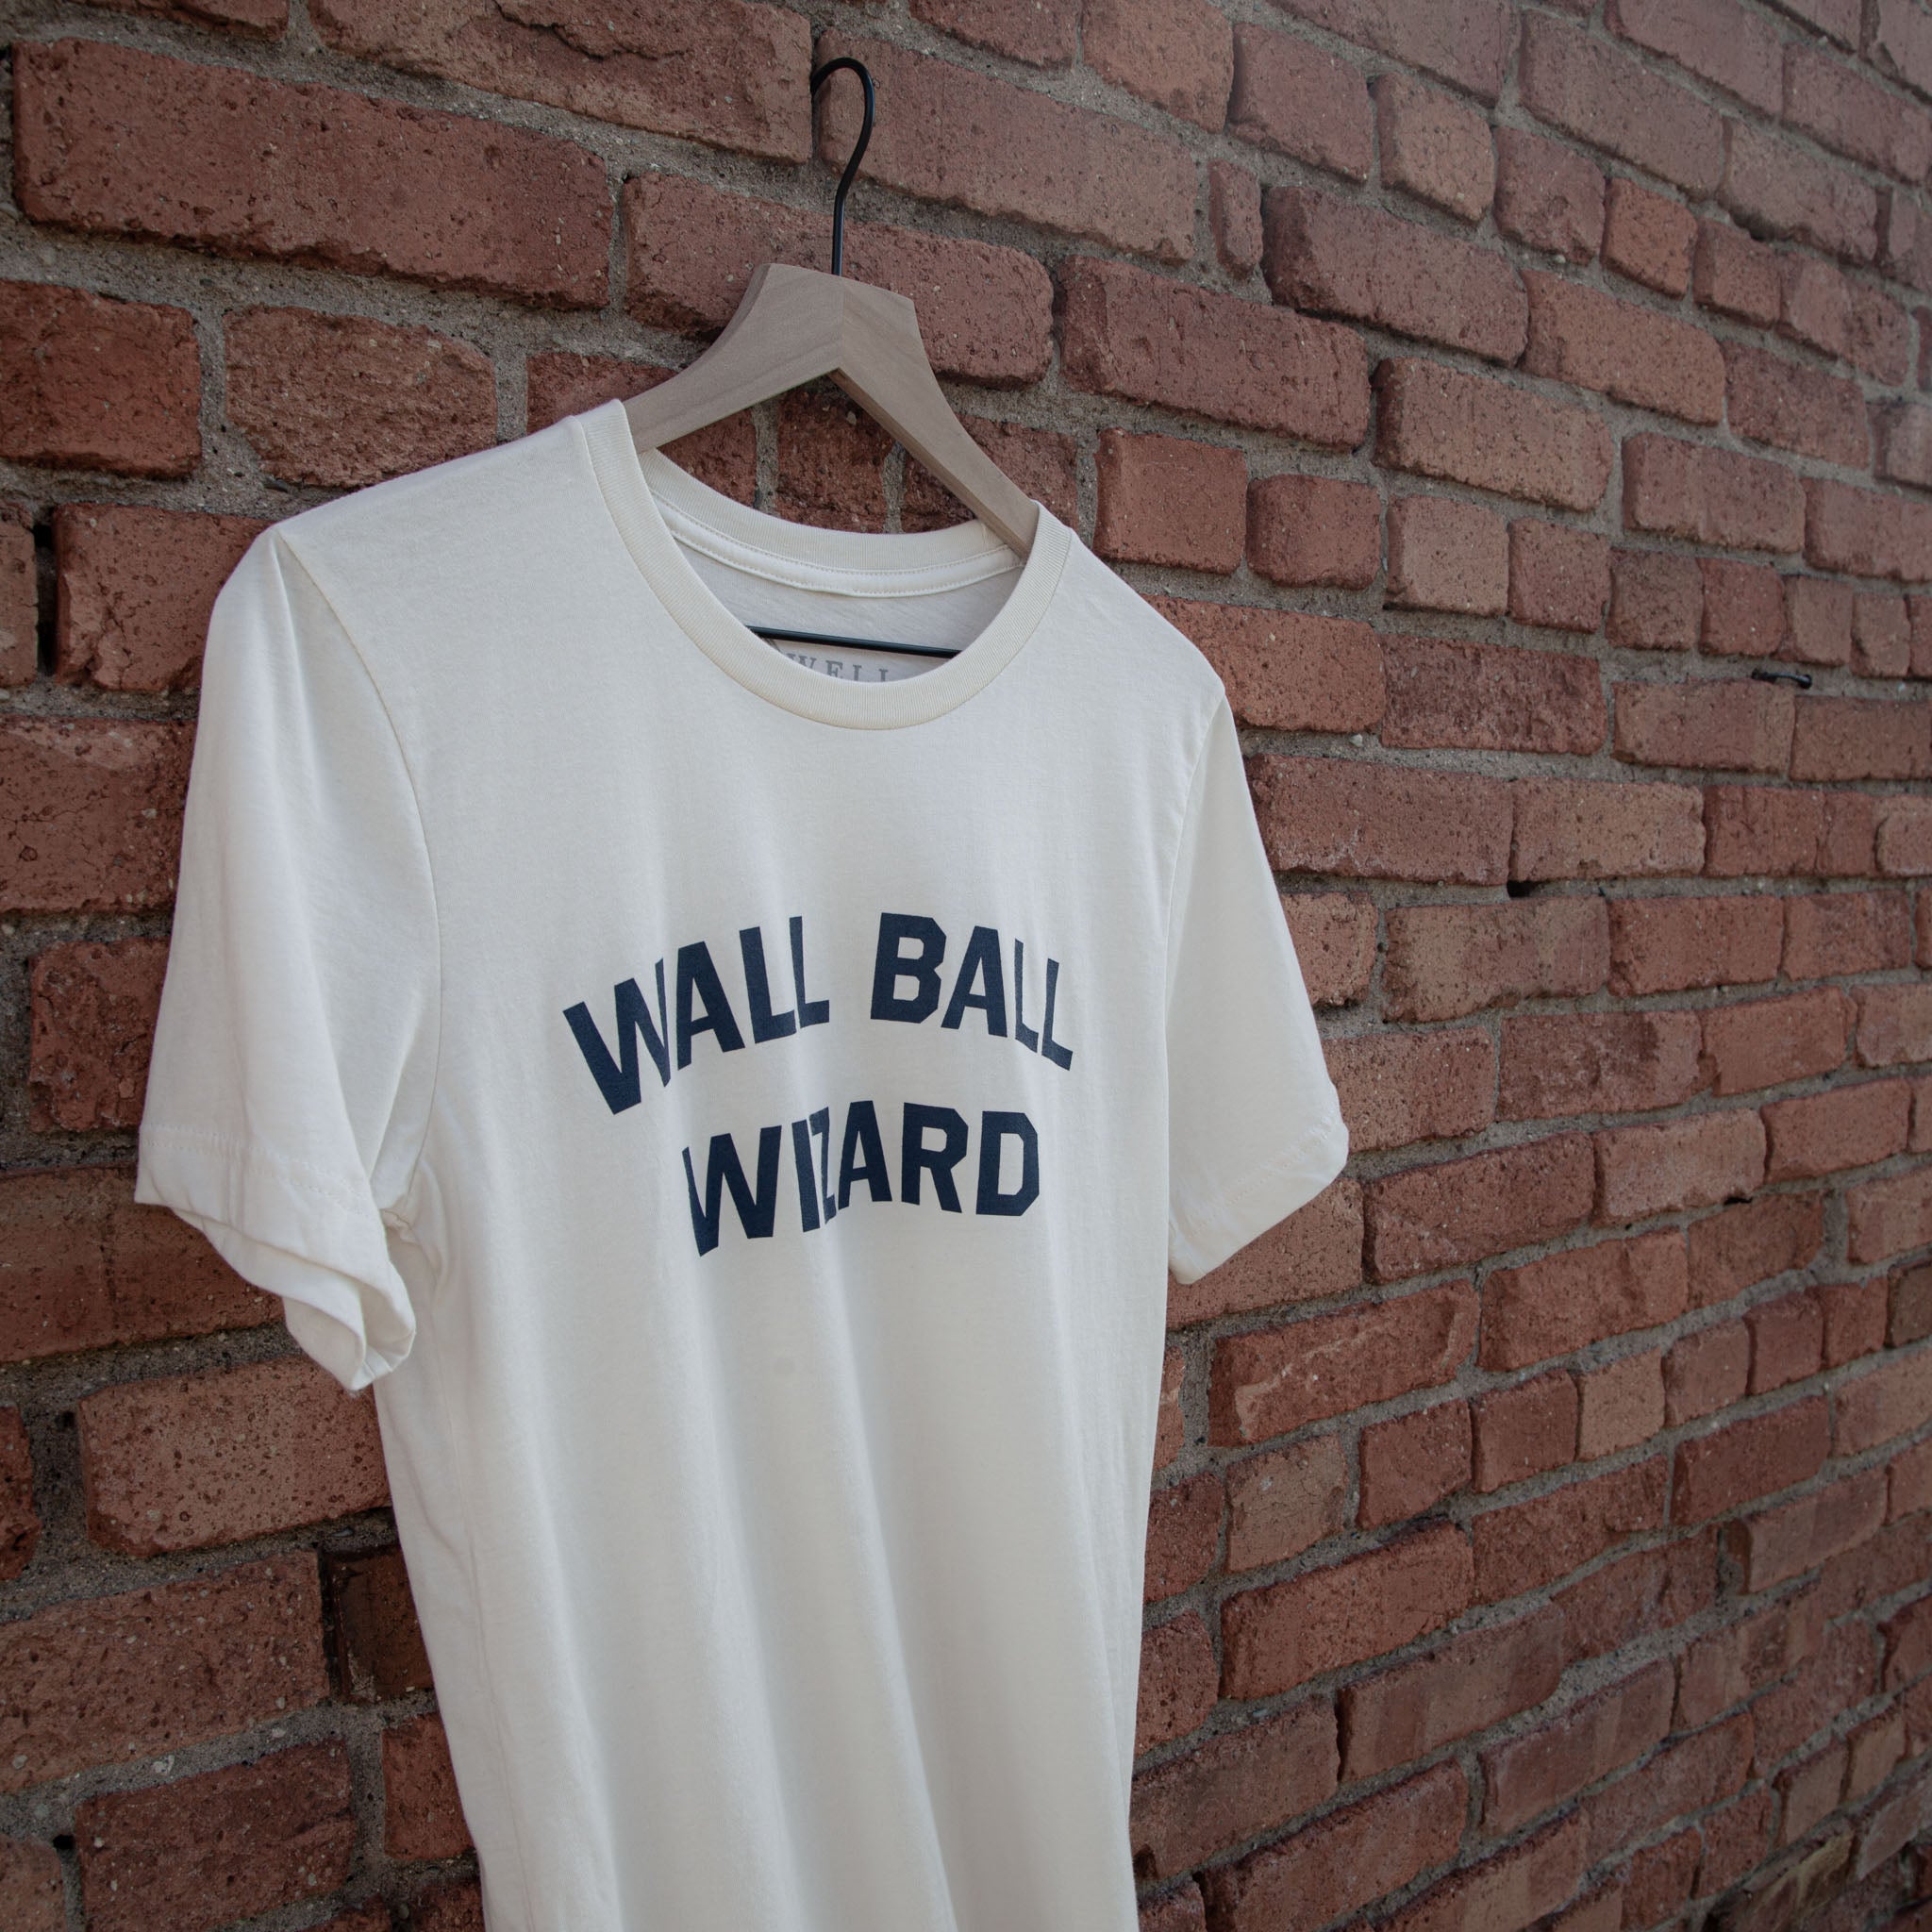 Wall Ball Wizard Tee